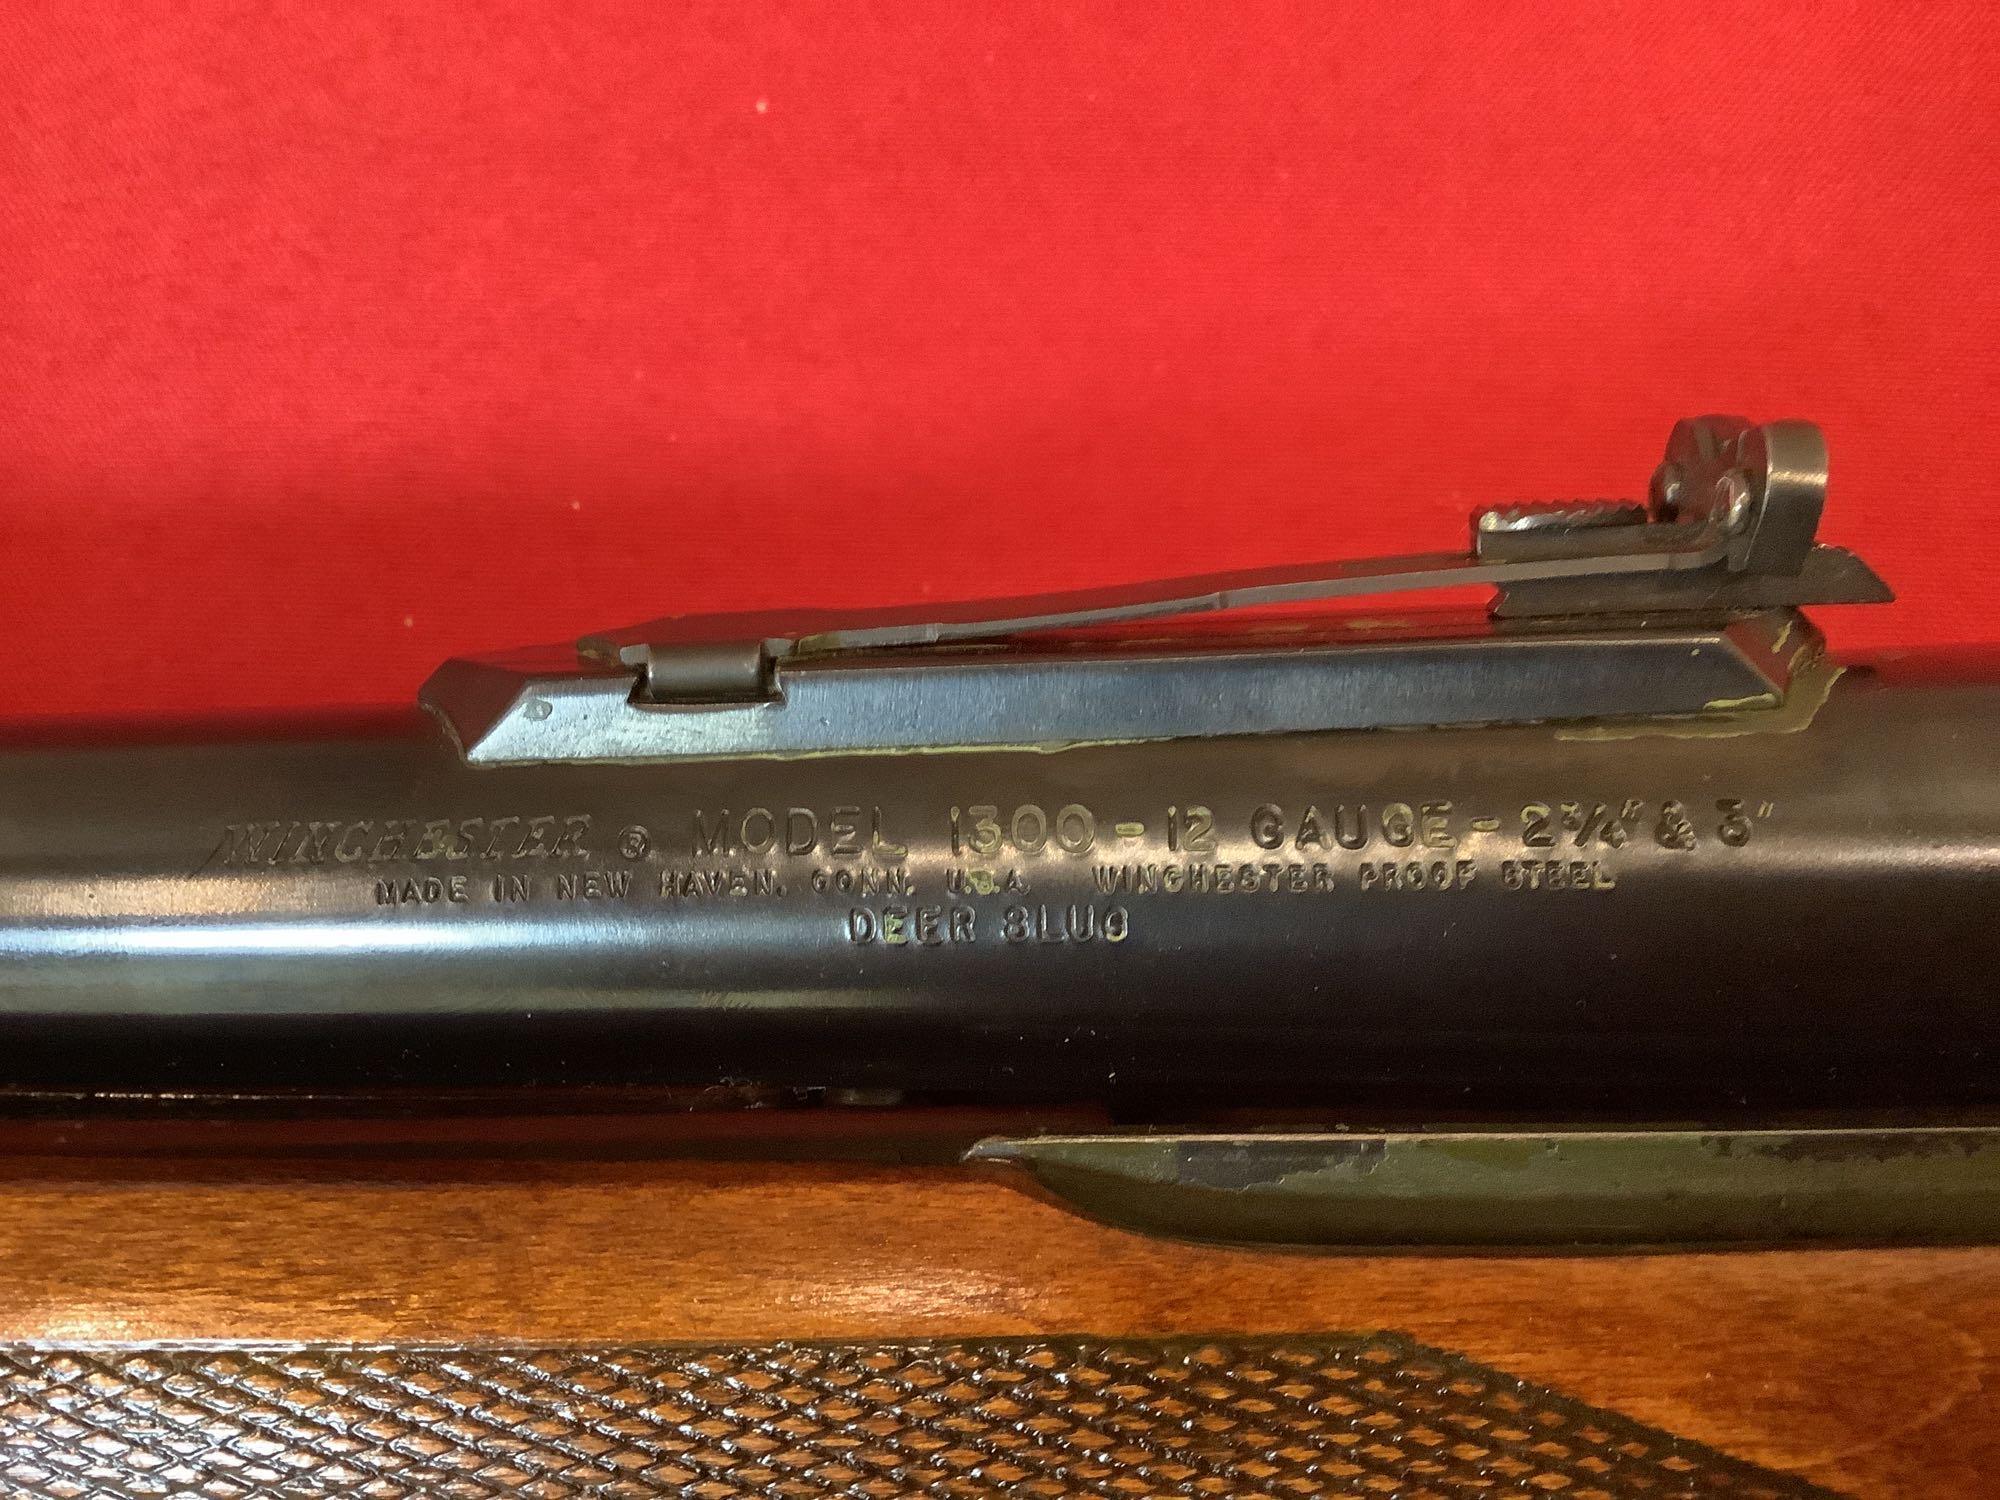 Winchester mod. 1300 Shotgun